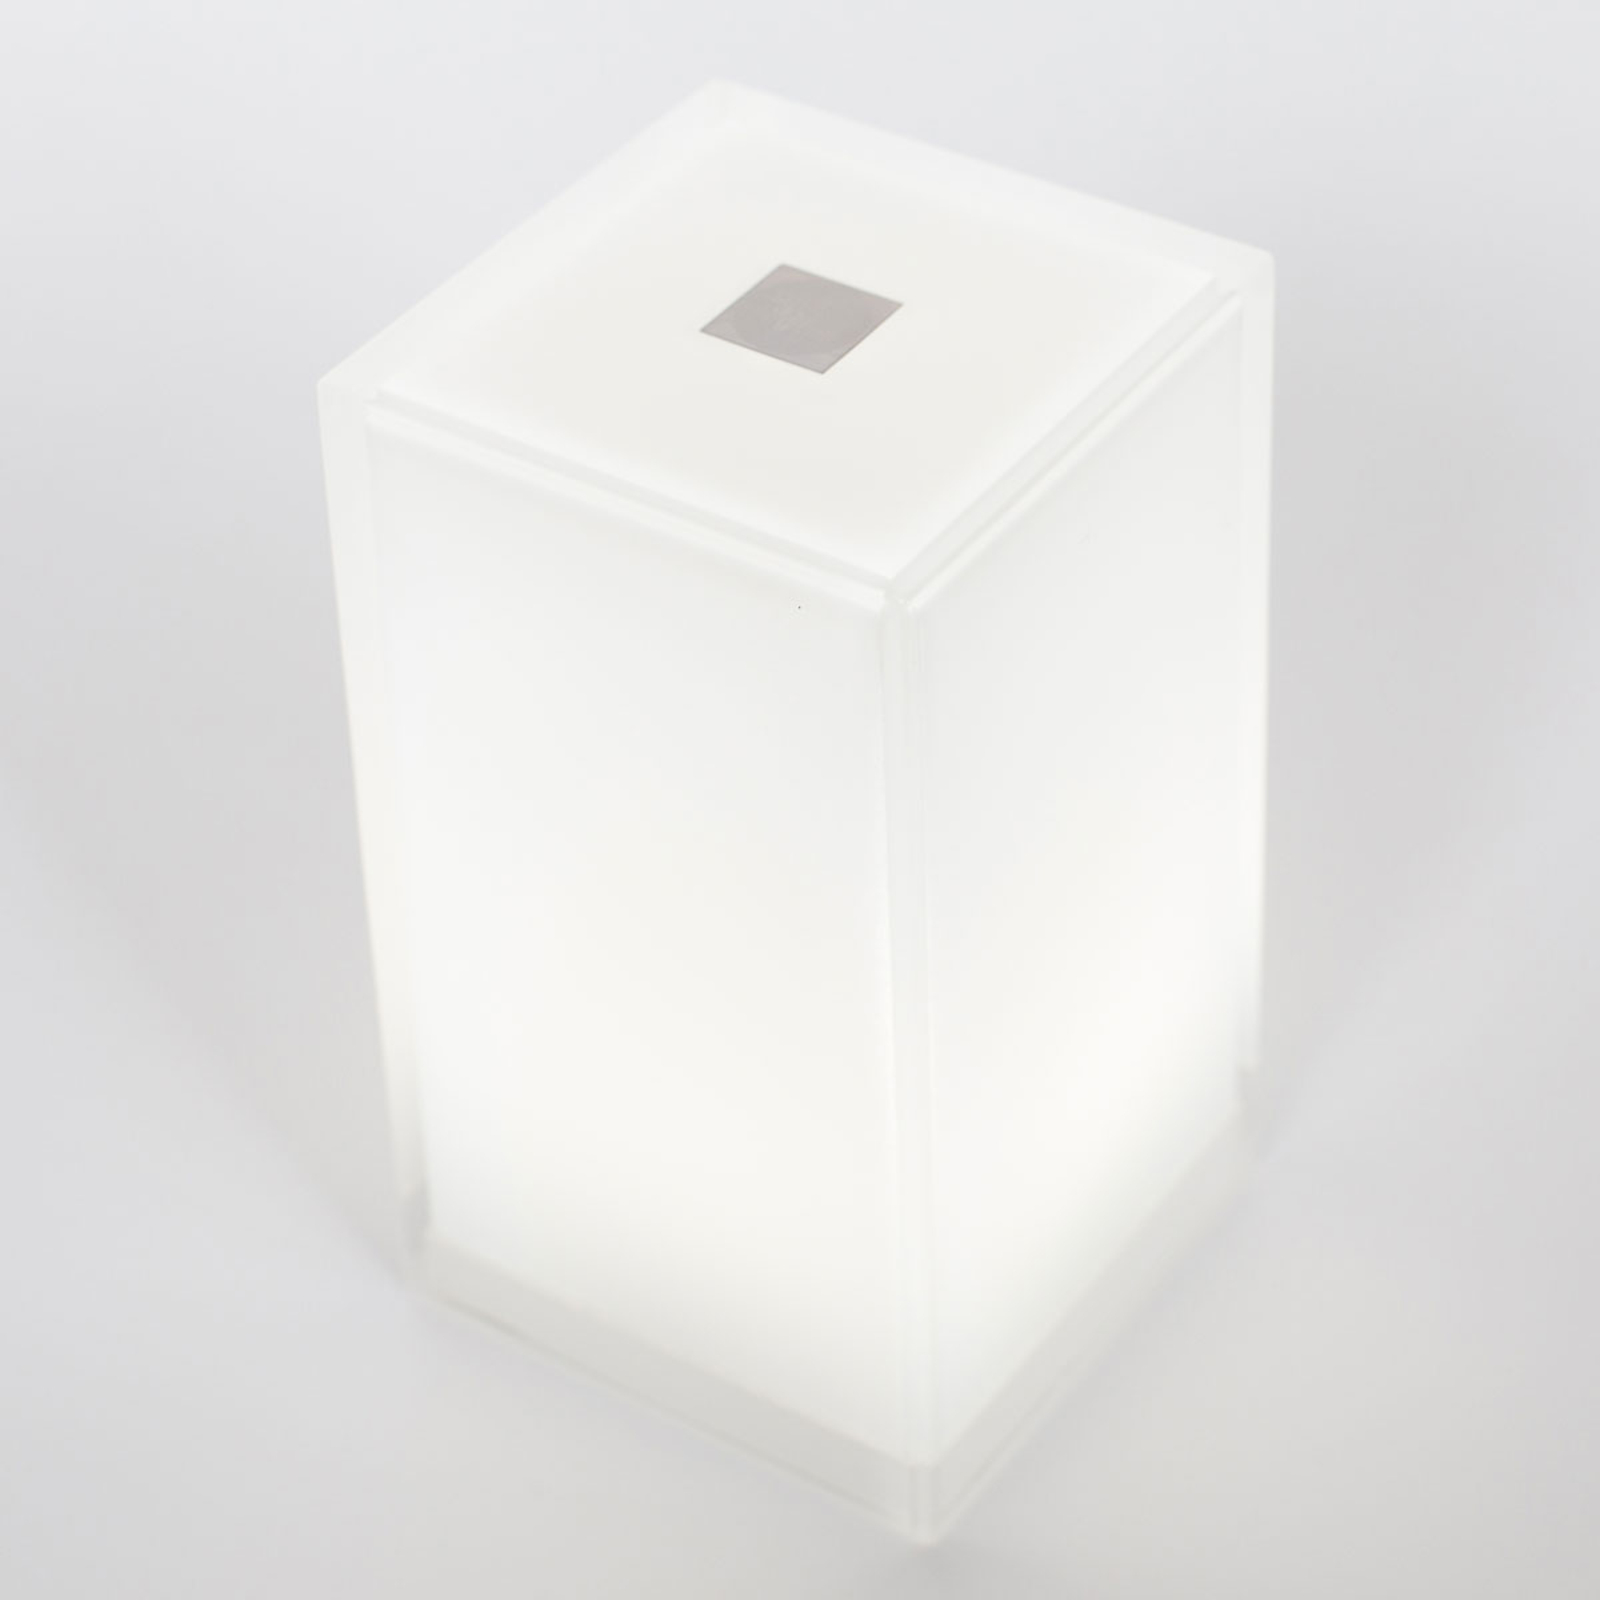 Stolní lampa Cub v balení po 6 kusech, ovládaná aplikací, RGBW